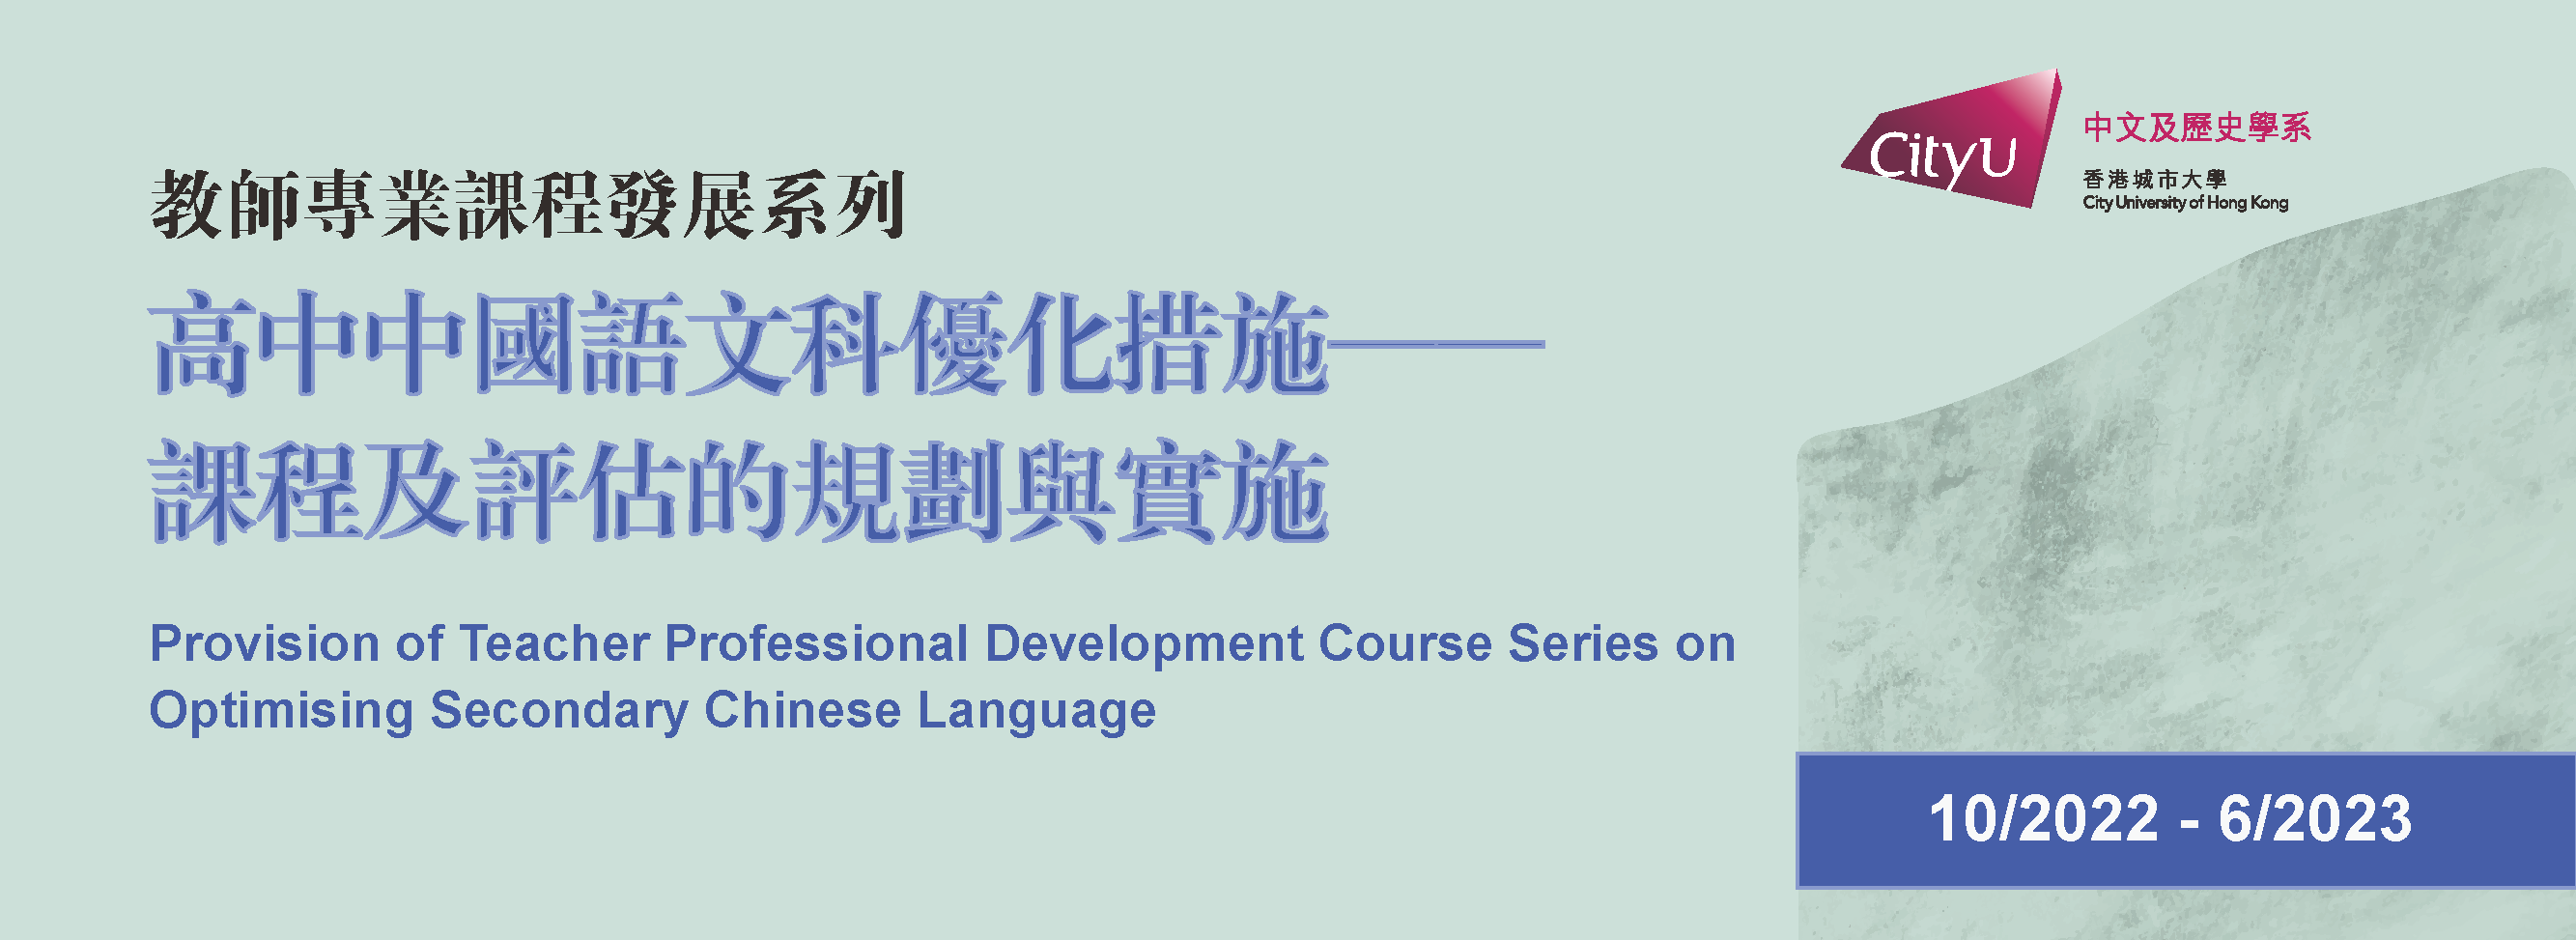 教師專業課程發展系列﹕高中中國語文科優化措施──課程及評估的規劃與實施